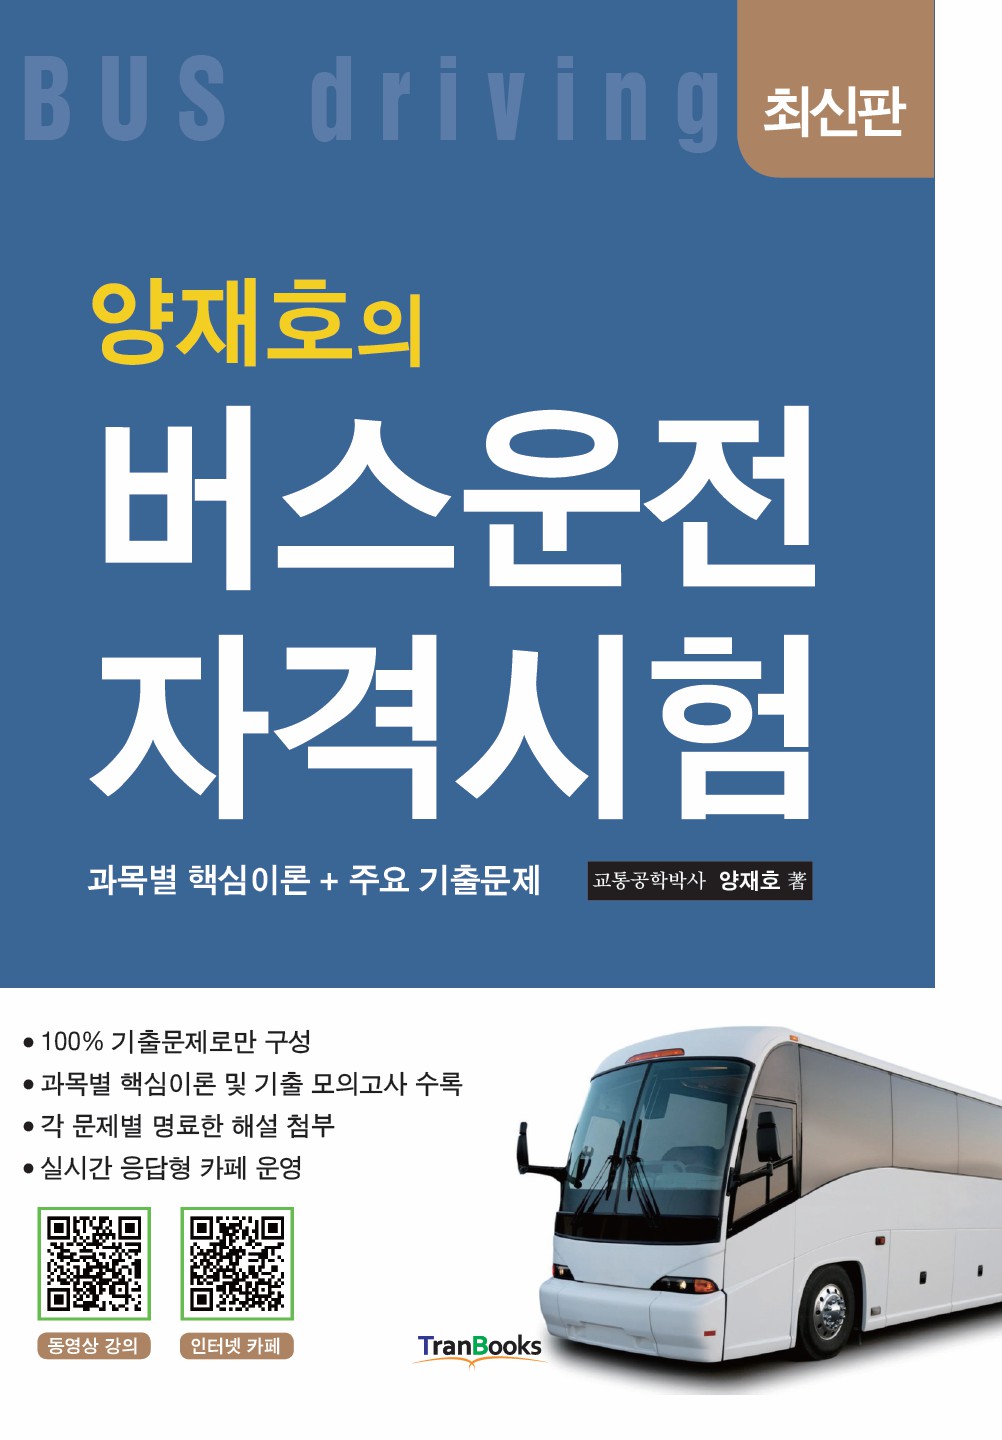 [버스] 시험 및 강의, 교재 소개(무료)